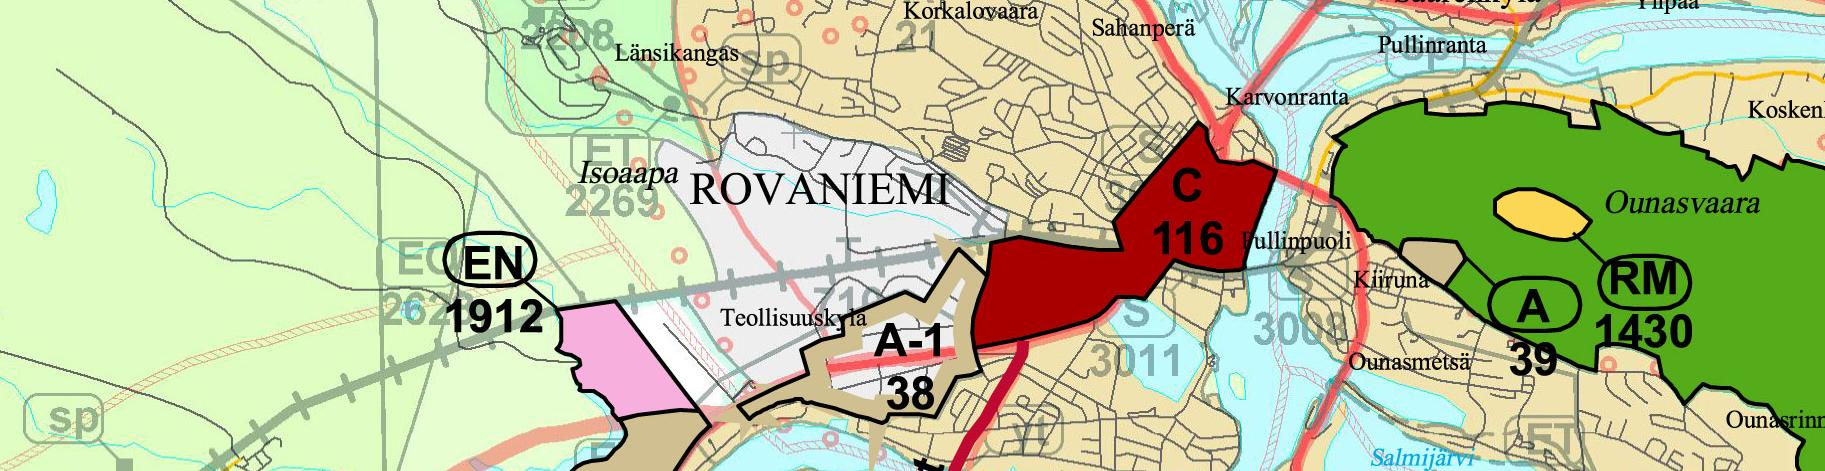 7 Kuva. Rovaniemen maakuntakaavan ja Rovaniemen vaihemaakuntakaavan yhdistelmä.